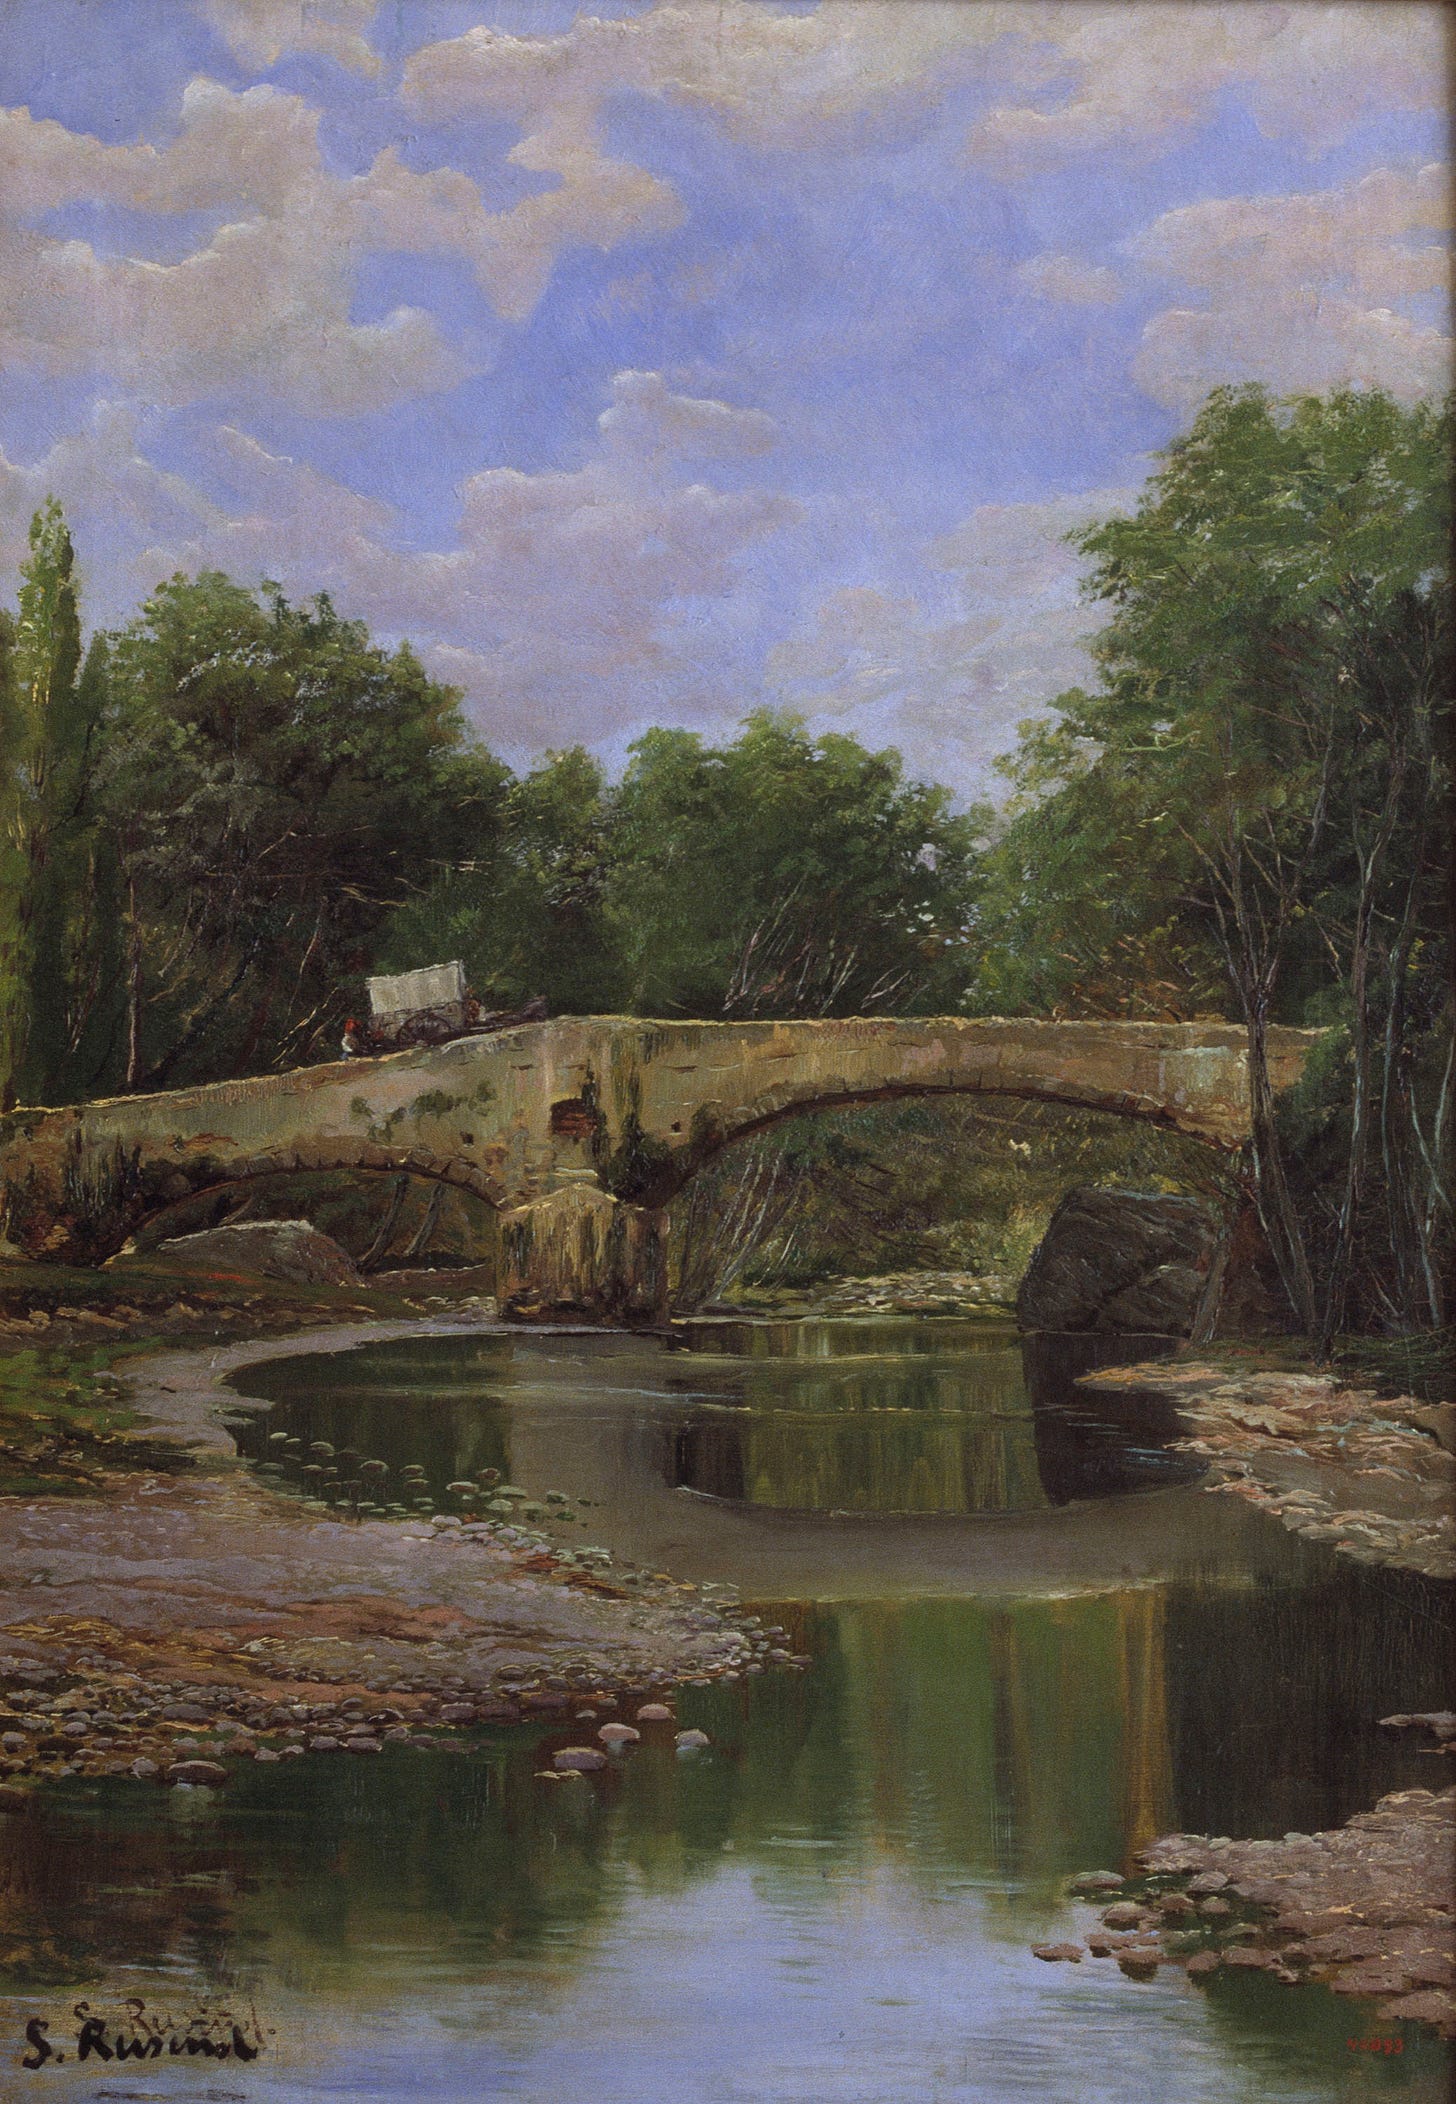 Santiago Rusiñol - Pont sobre un riu - Barcelona, Cap a 1884